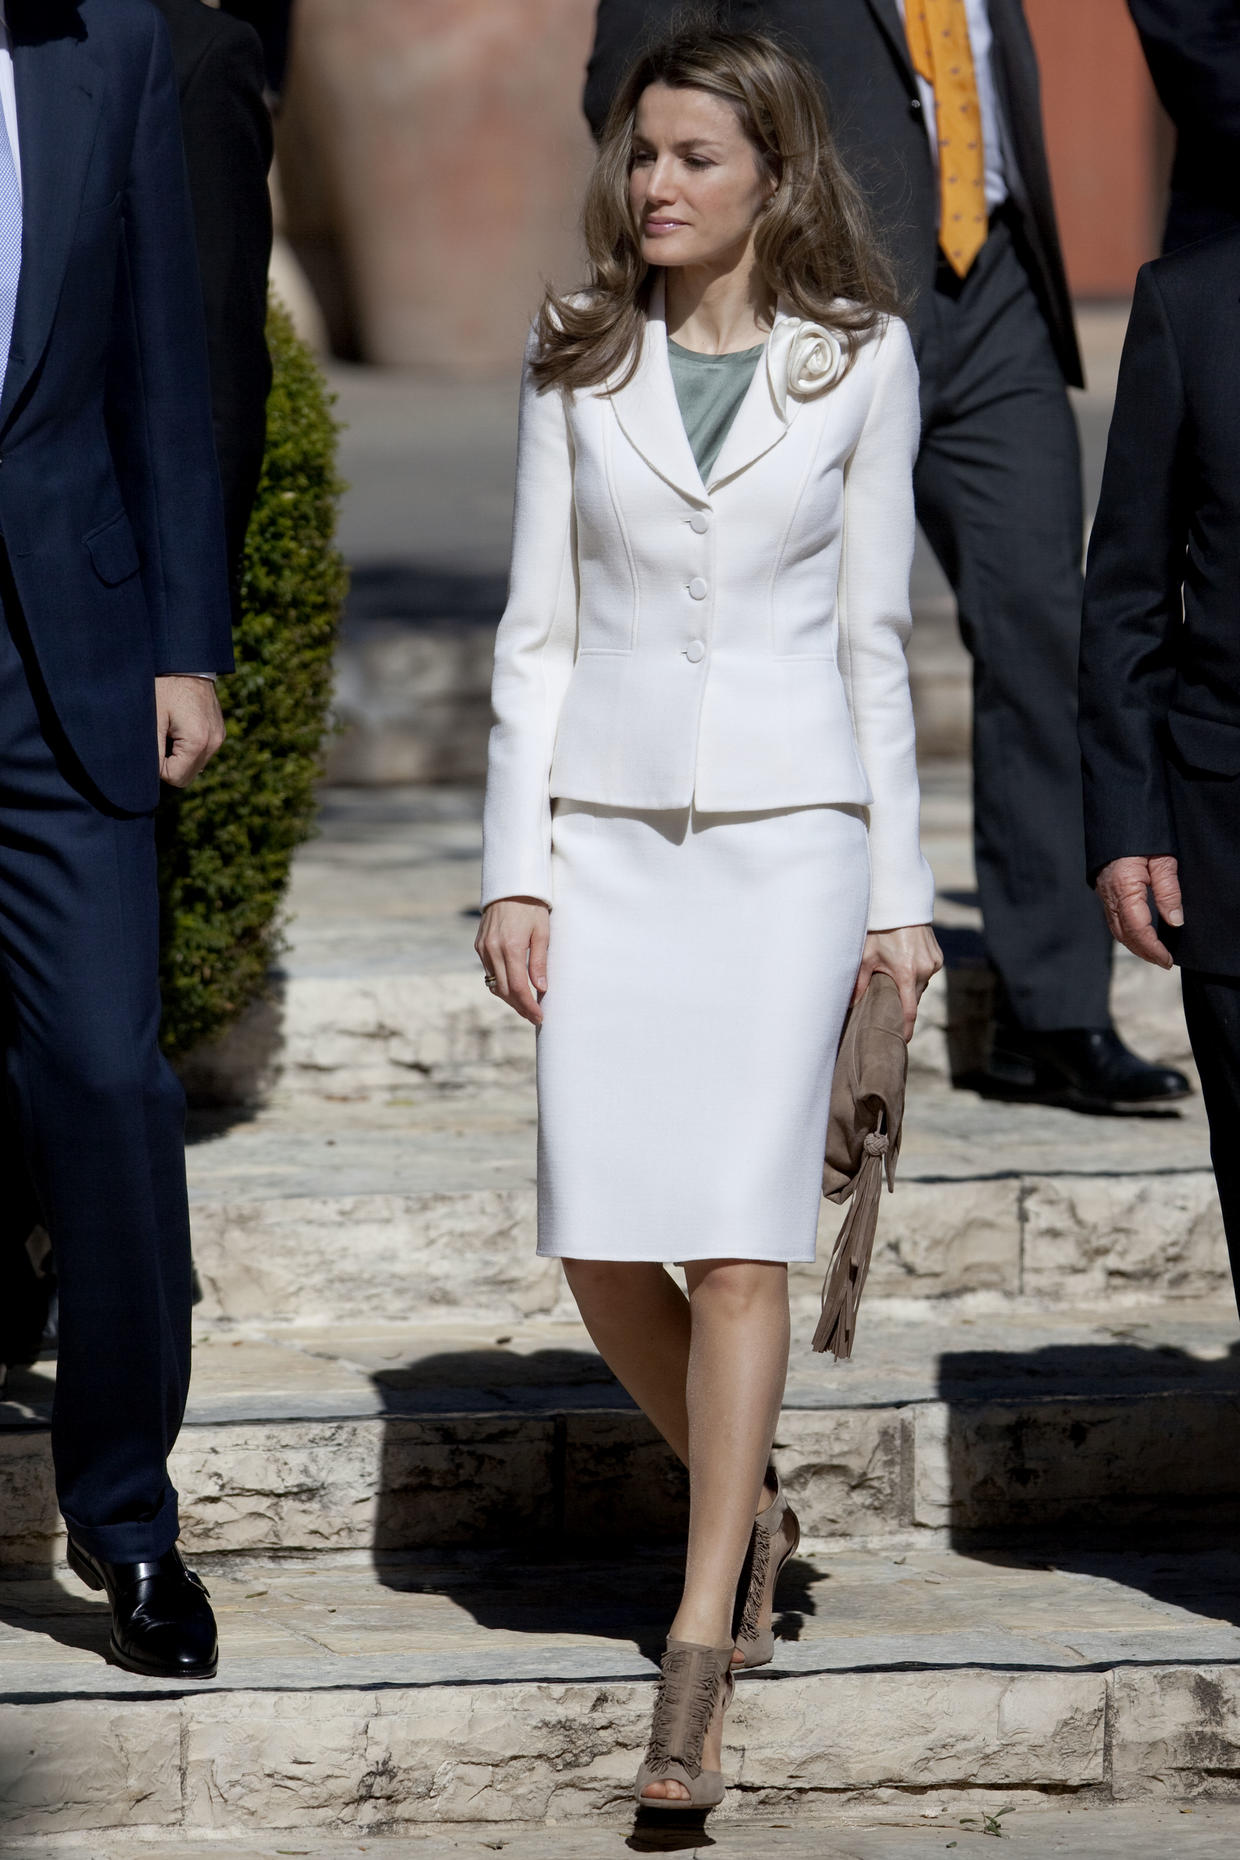 Spain's Queen Letizia